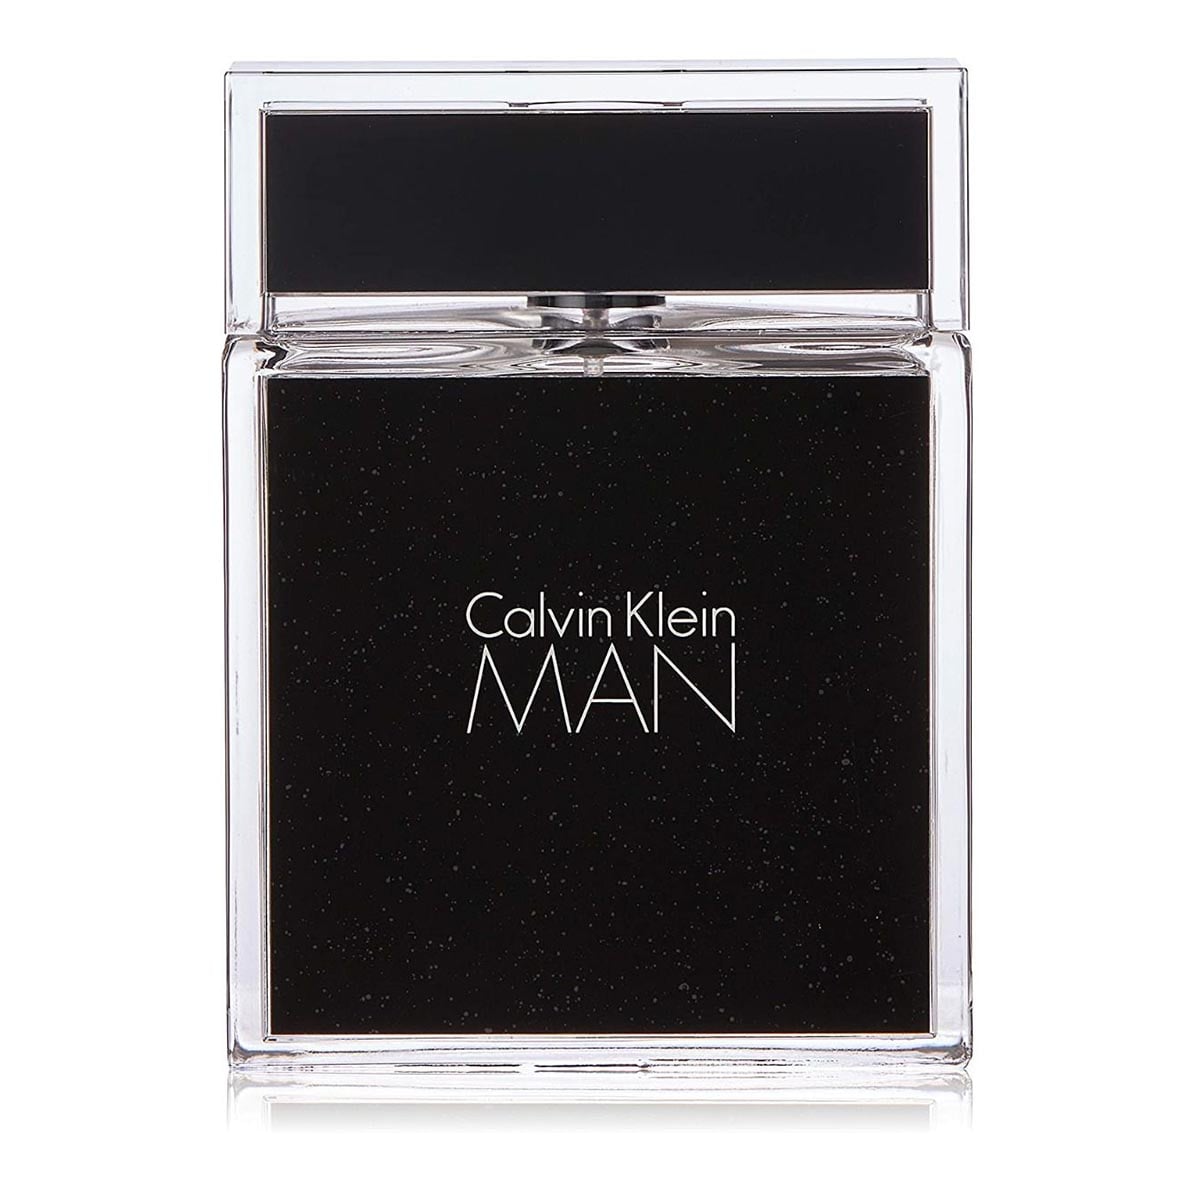 Calvin Klein Man Edt Spray 100Ml - Allurebeautypk